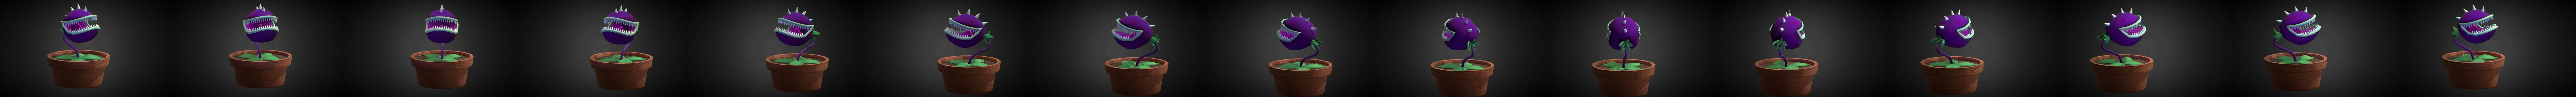 Plantsvszombies 3D models - Sketchfab